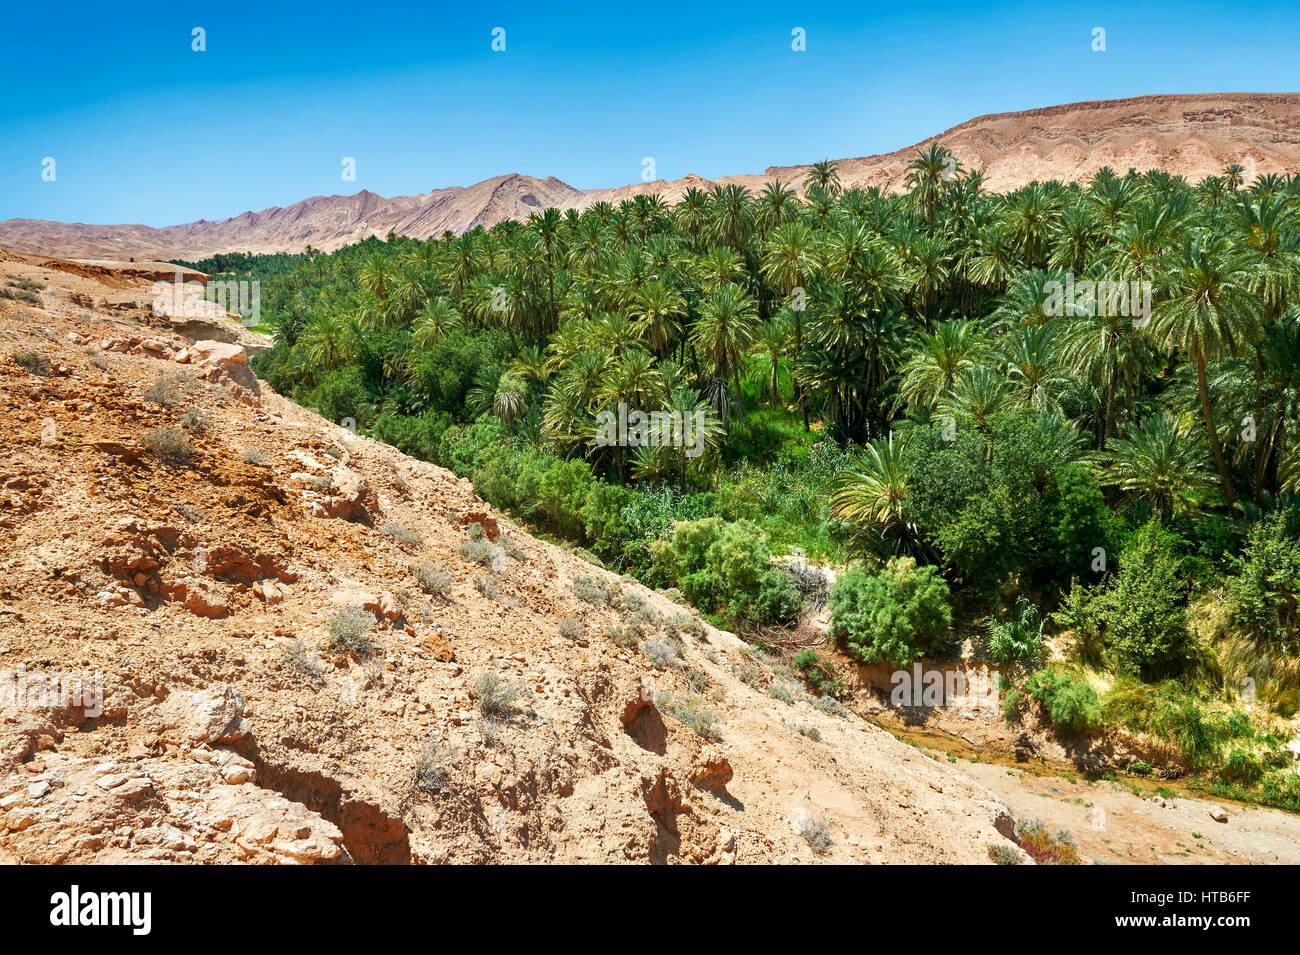 Die Dattelpalmen der Sahara Wüste Oase der Mides, Tunesien, Nordafrika Stockfoto